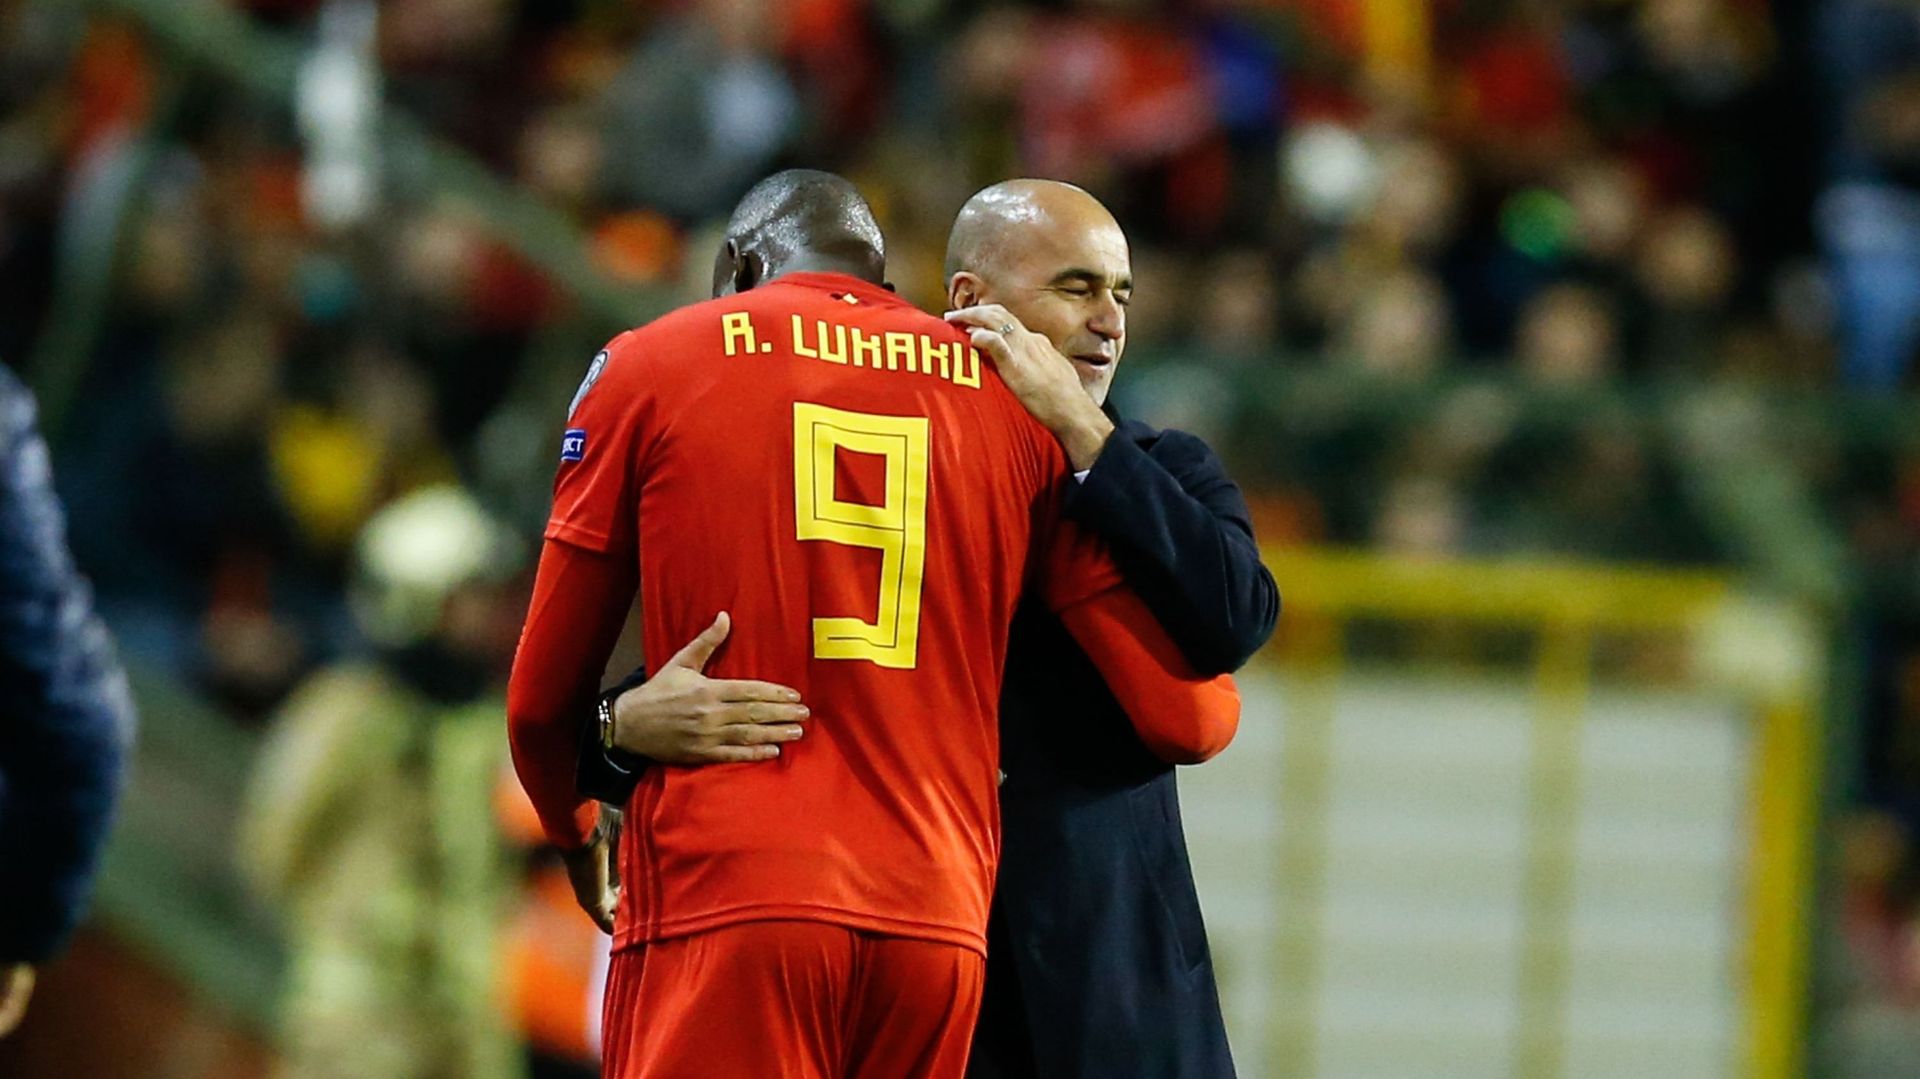 Martinez à propos de Lukaku : "Très peu d'attaquants ont des stats comme les siennes"